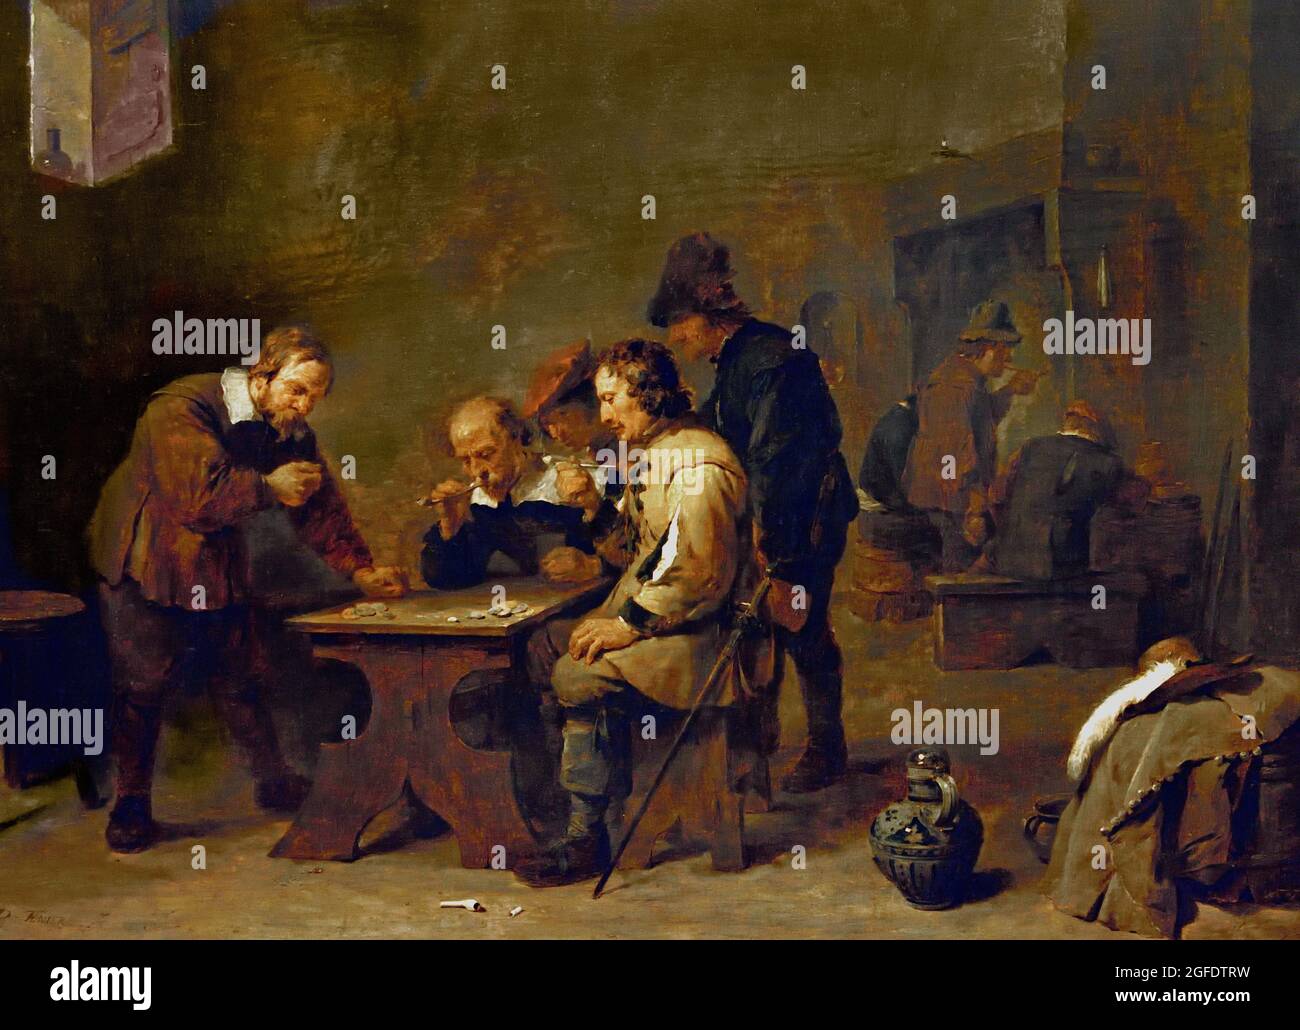 The Gamblers, David Teniers (II), 1610-1690. 1640 Öl auf Tafel 45,2cm × 59,1cm Belgien Belgien Flämisch zwei Männer der Mittelschicht und ein Offizier werden in ihrem Spiel absorbiert. Zwei Bauern schauen zu. Der Mann, der links steht, ist gerade dabei, die Würfel zu werfen. Glücksspiele, an denen Geld beteiligt war, wurden von der Kanzel aus denunziert. Doch hier, Teniers nein, zeichnet er einfach die Szene auf. Stockfoto